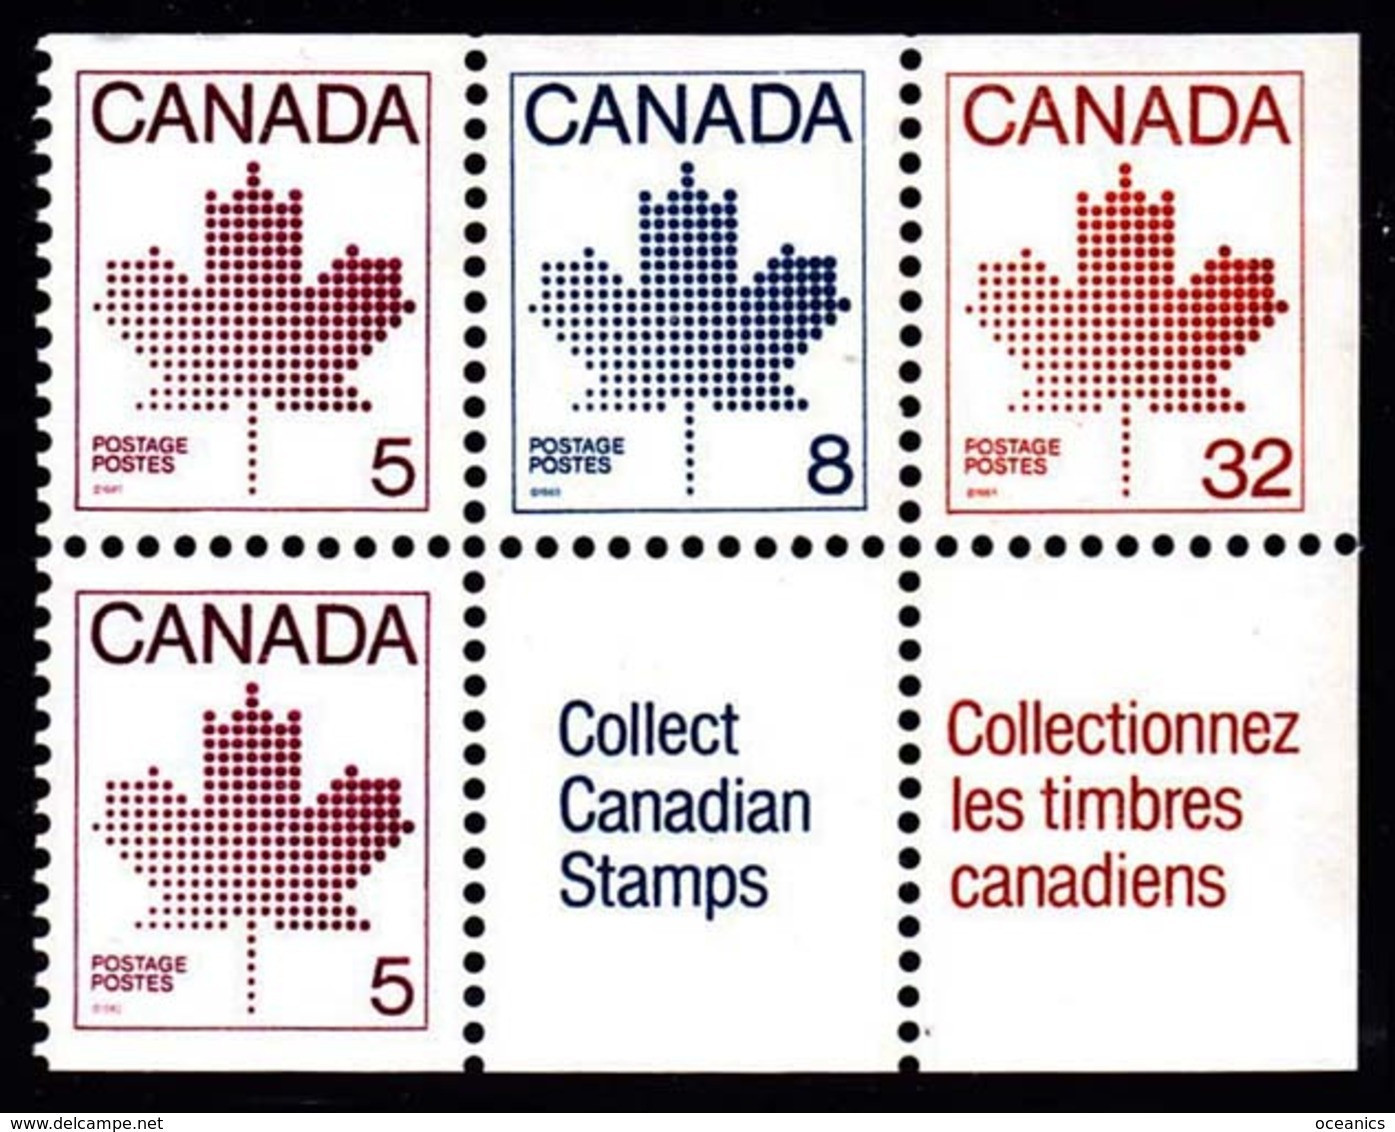 Canada (Scott No. 946 - Feuille D'érable / Maple Leaf) [**] Carnet / Booklet - Sellos (solo)